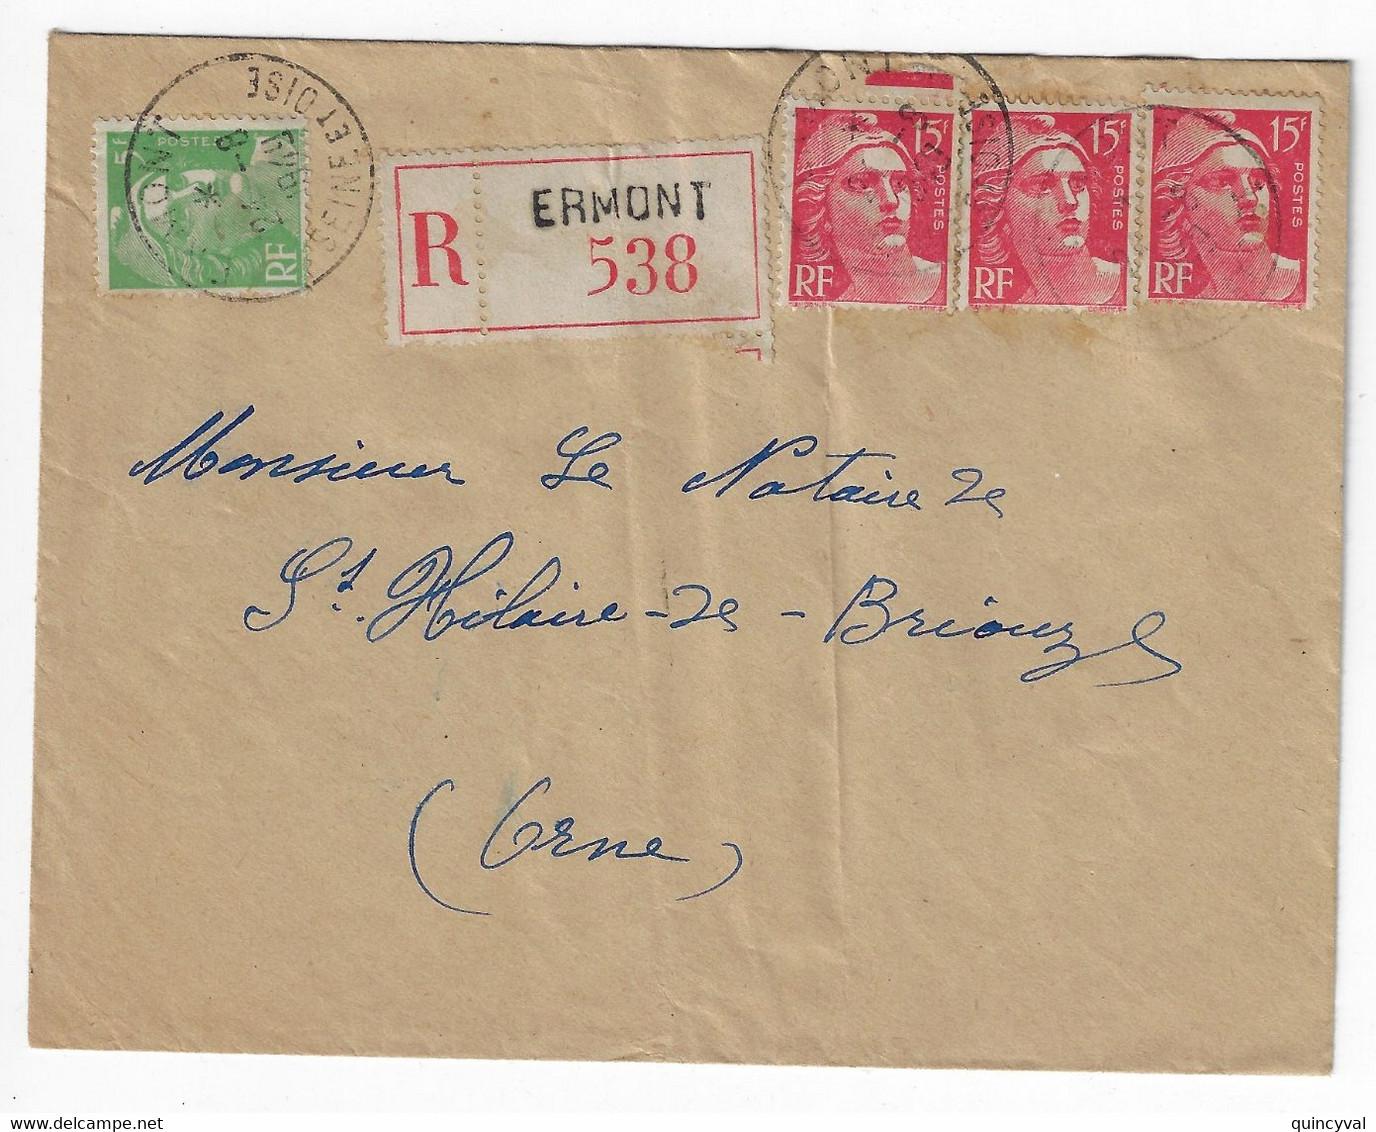 ERMONT Seine Et Oise Lettre Recommandée  5F Vert 15 F Gandon Etiquette Yv 813 809 Ob 24 8 1949 - Briefe U. Dokumente